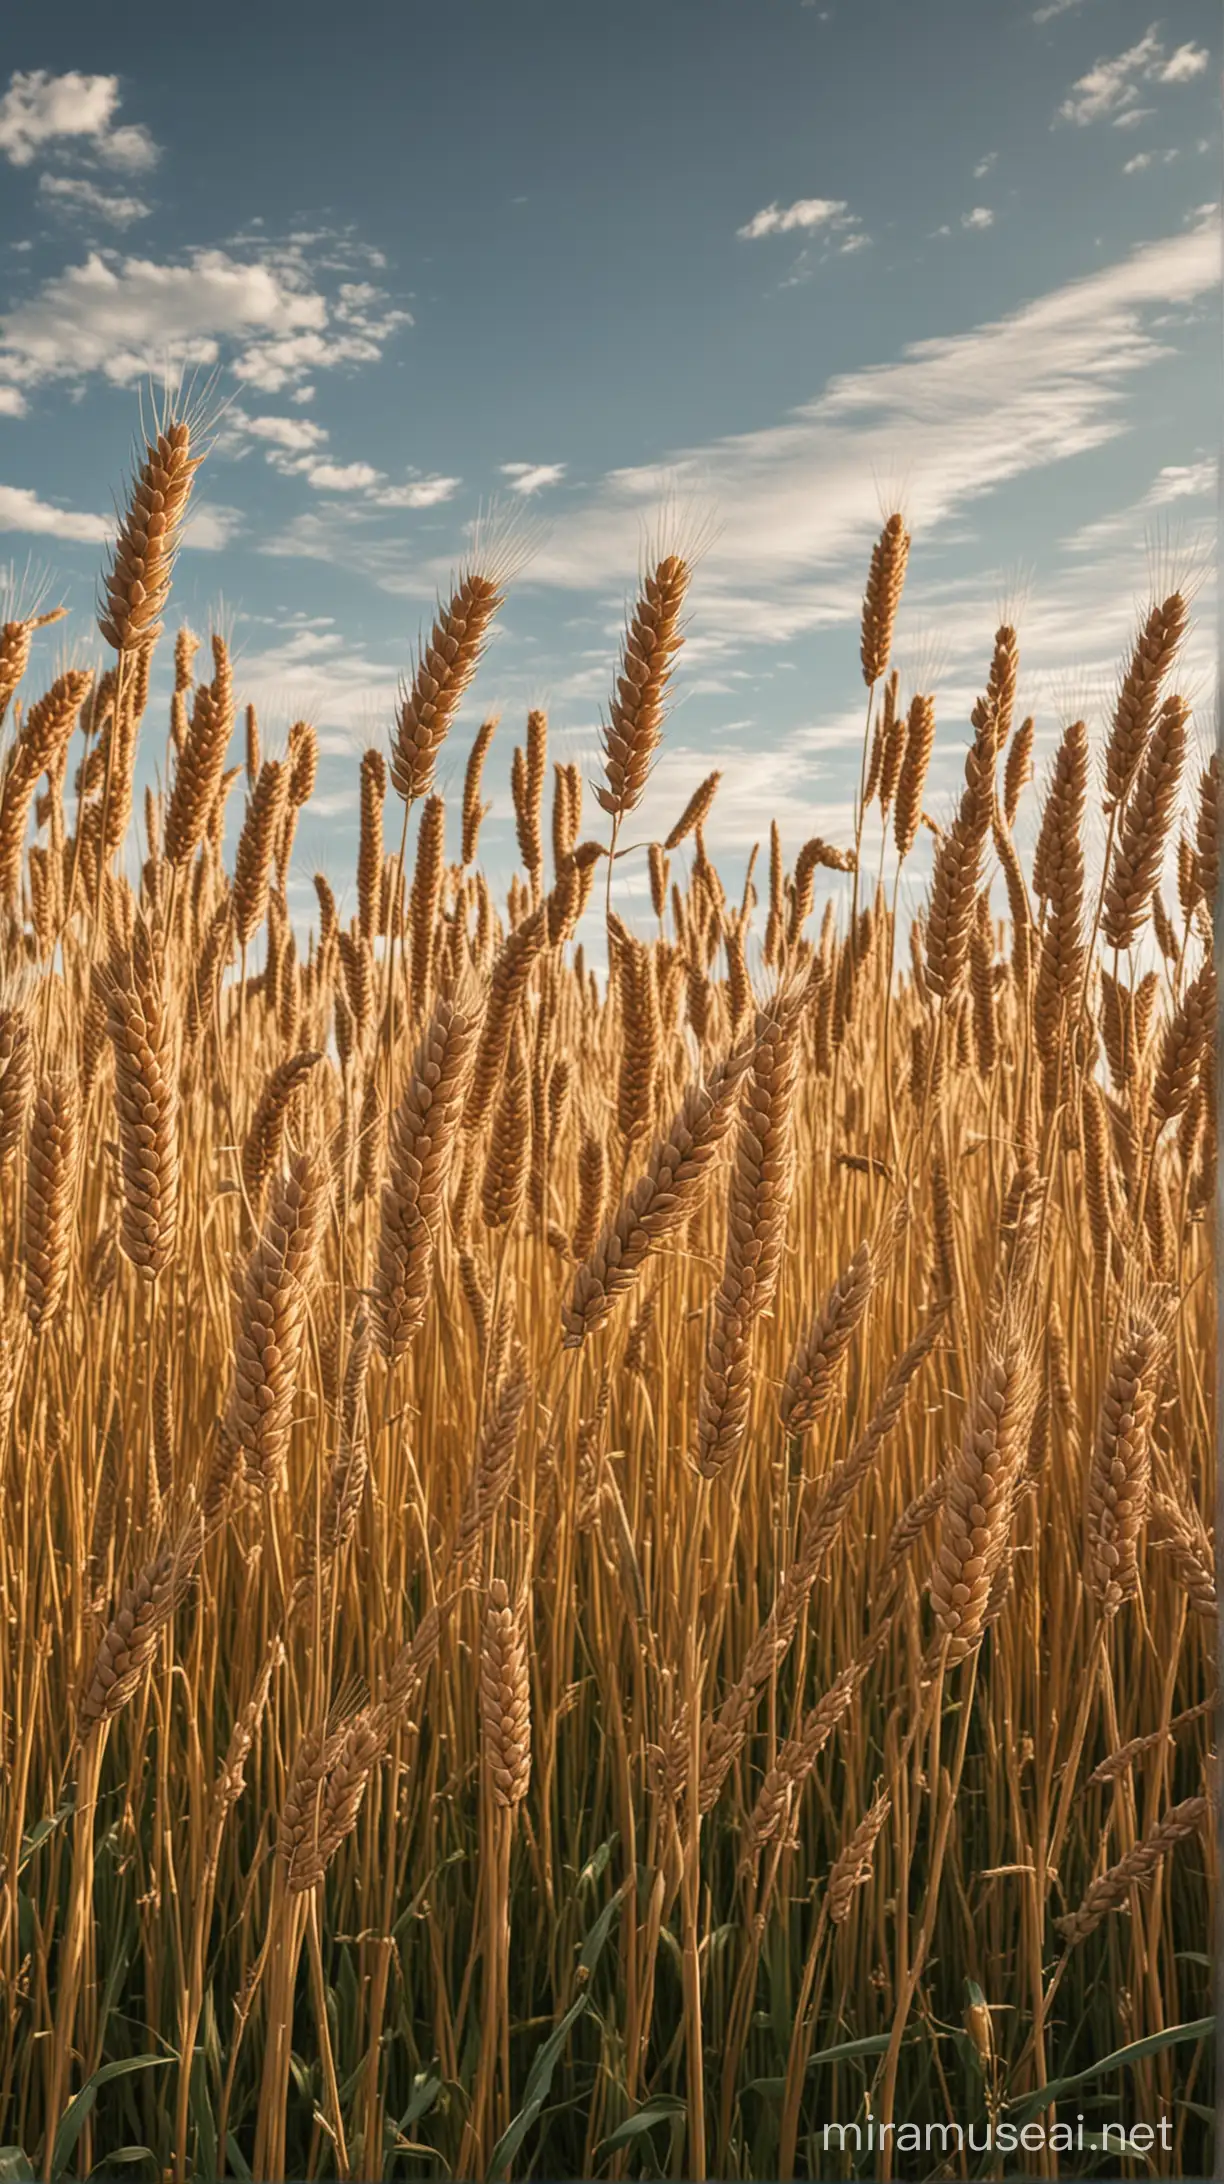 A field of tall wheat 